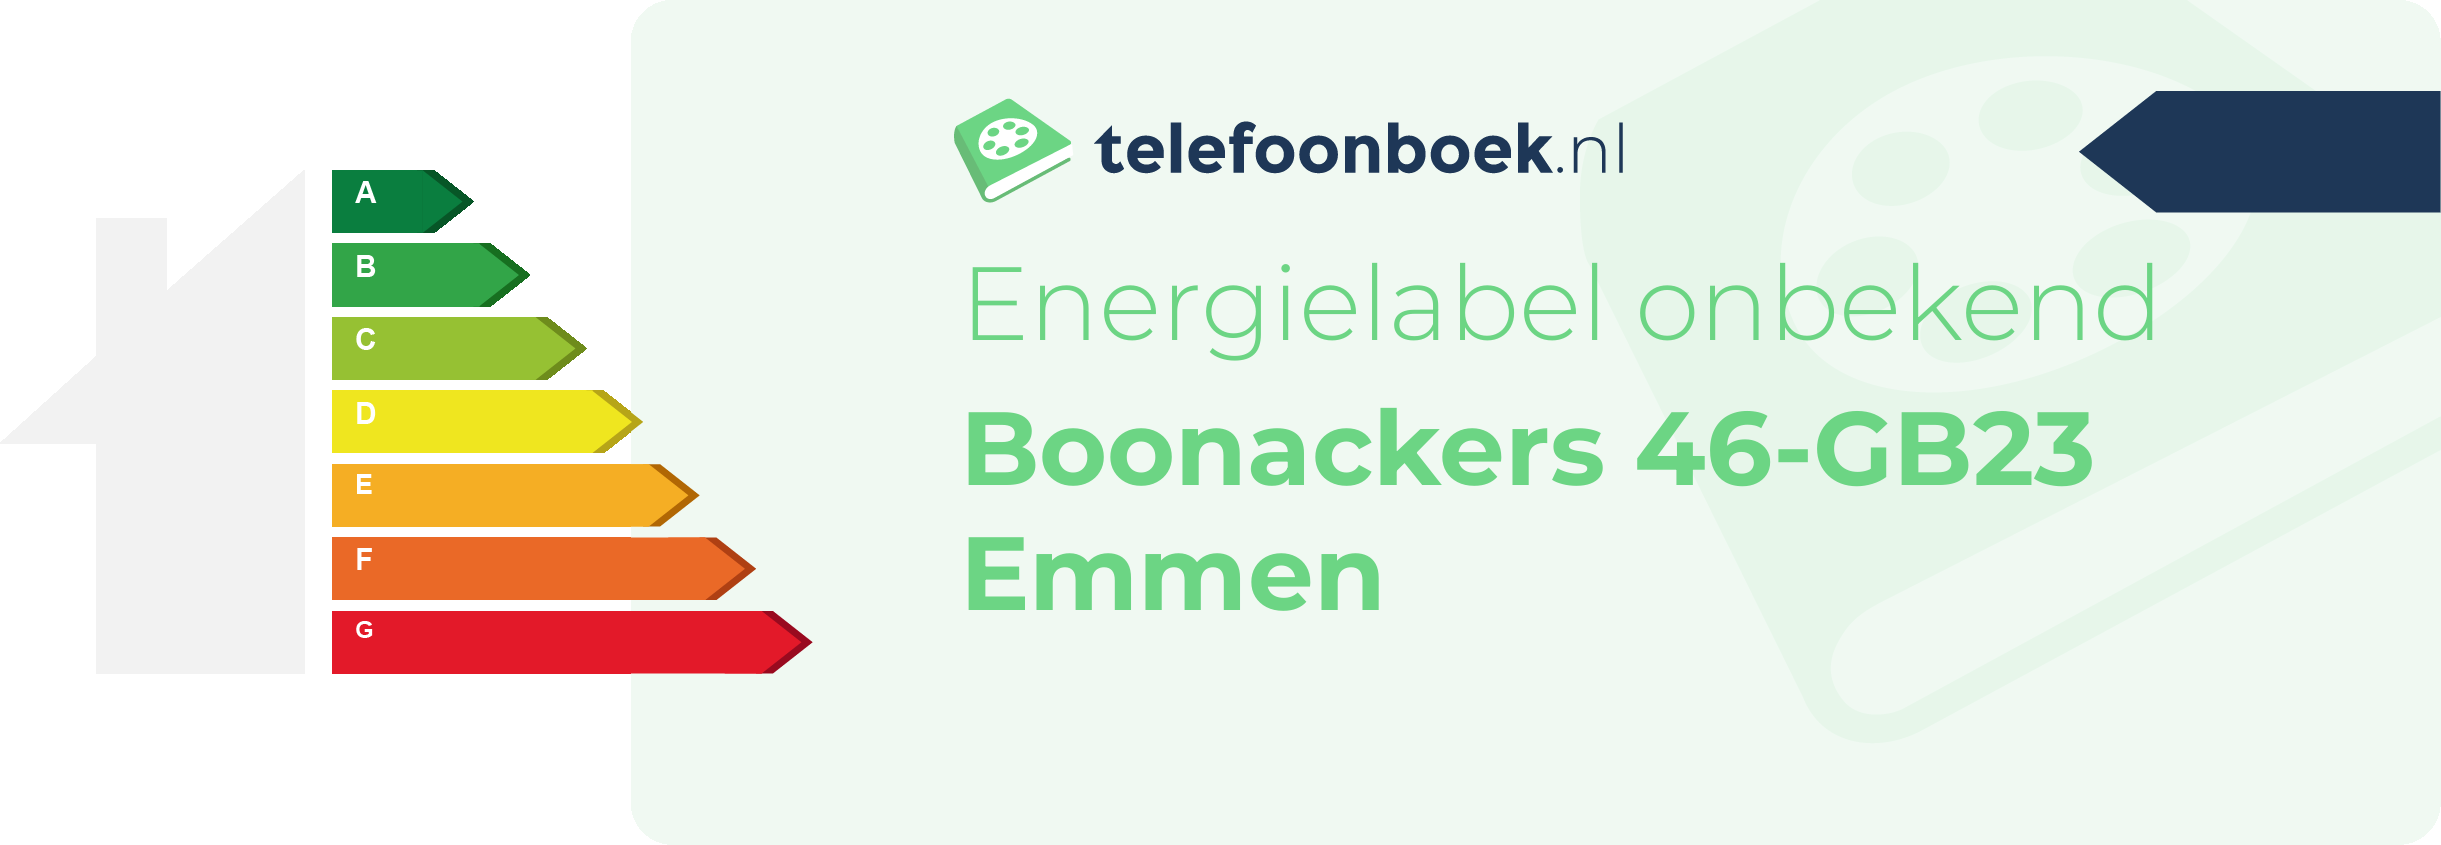 Energielabel Boonackers 46-GB23 Emmen